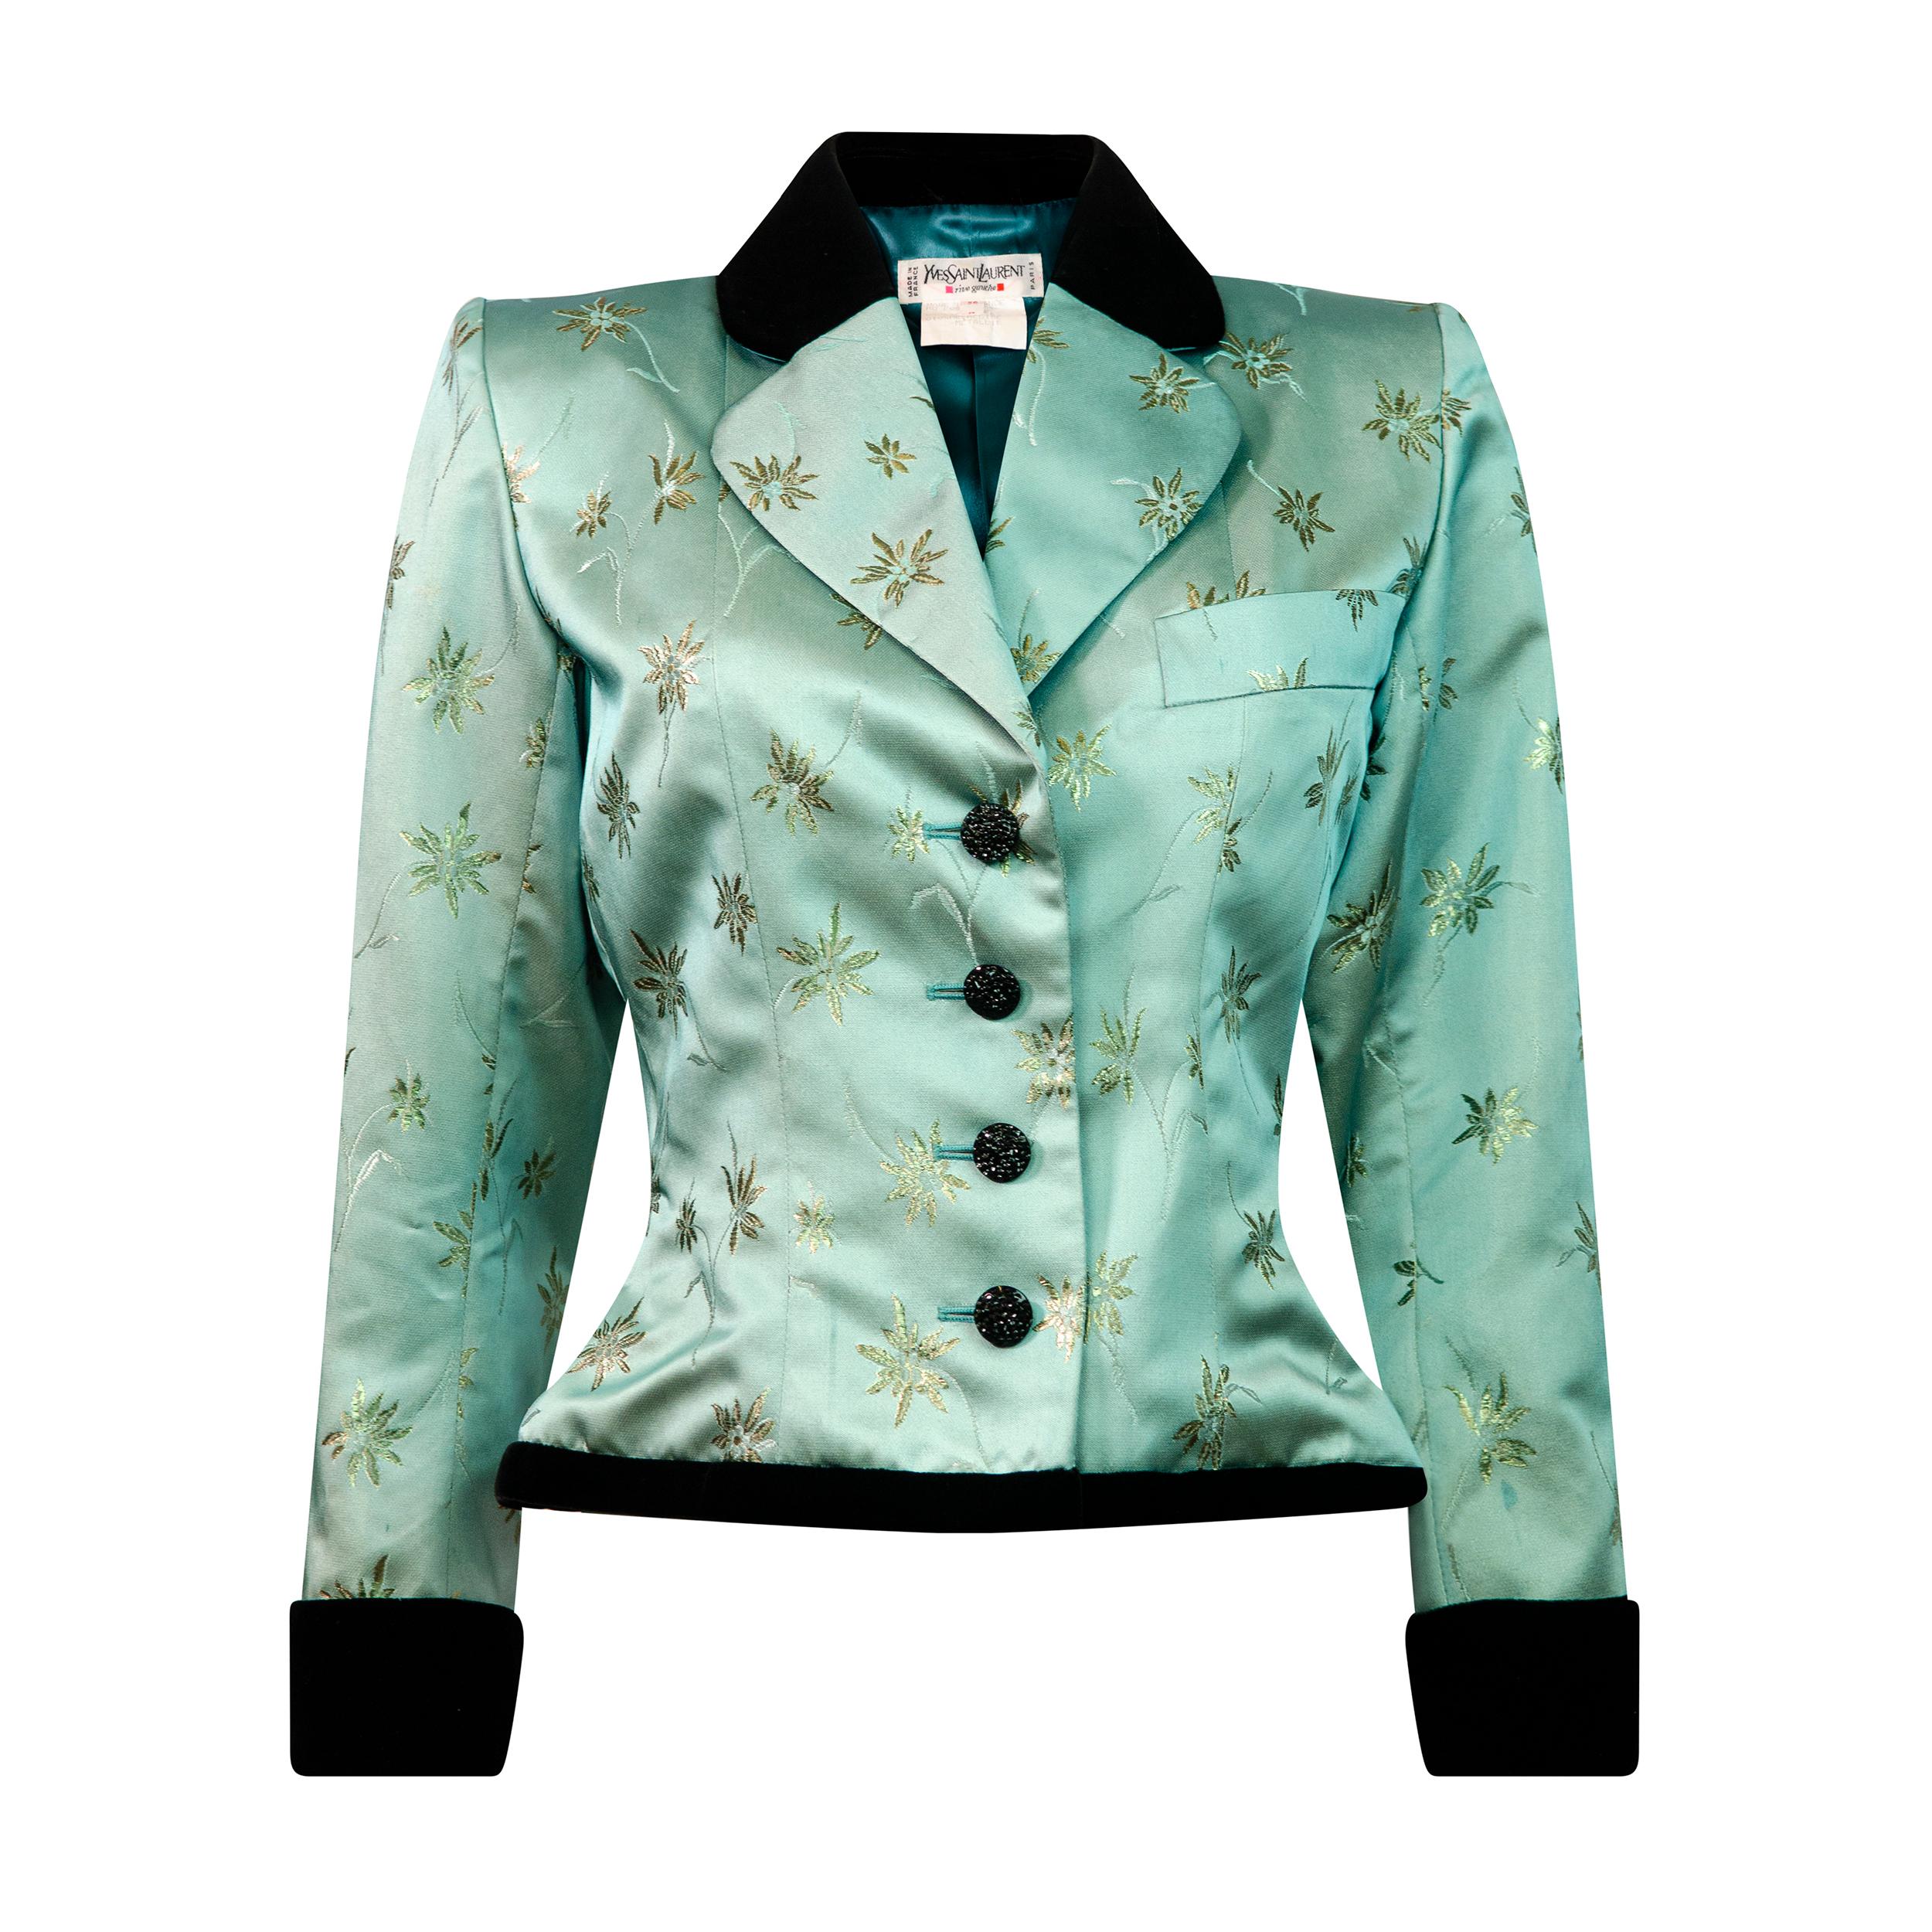 Yves Saint Laurent Rive Gauche Vintage 1990’s Green Floral Jacquard Jacket For Sale